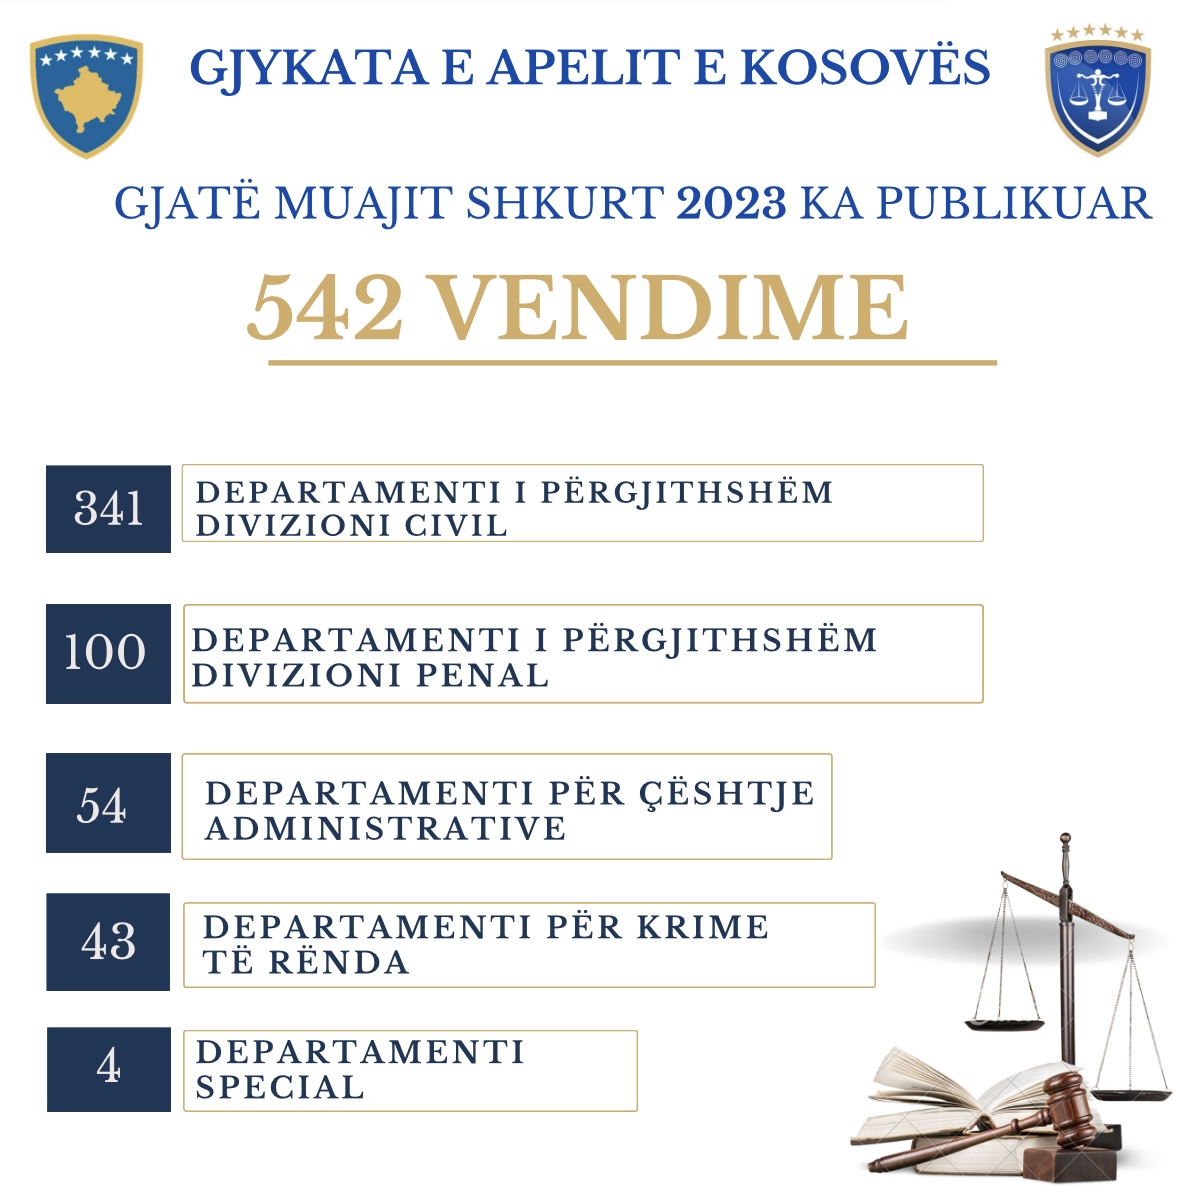 Gjykata e Apelit e Kosovës gjatë muajit Shkurt ka publikuar 542 vendime